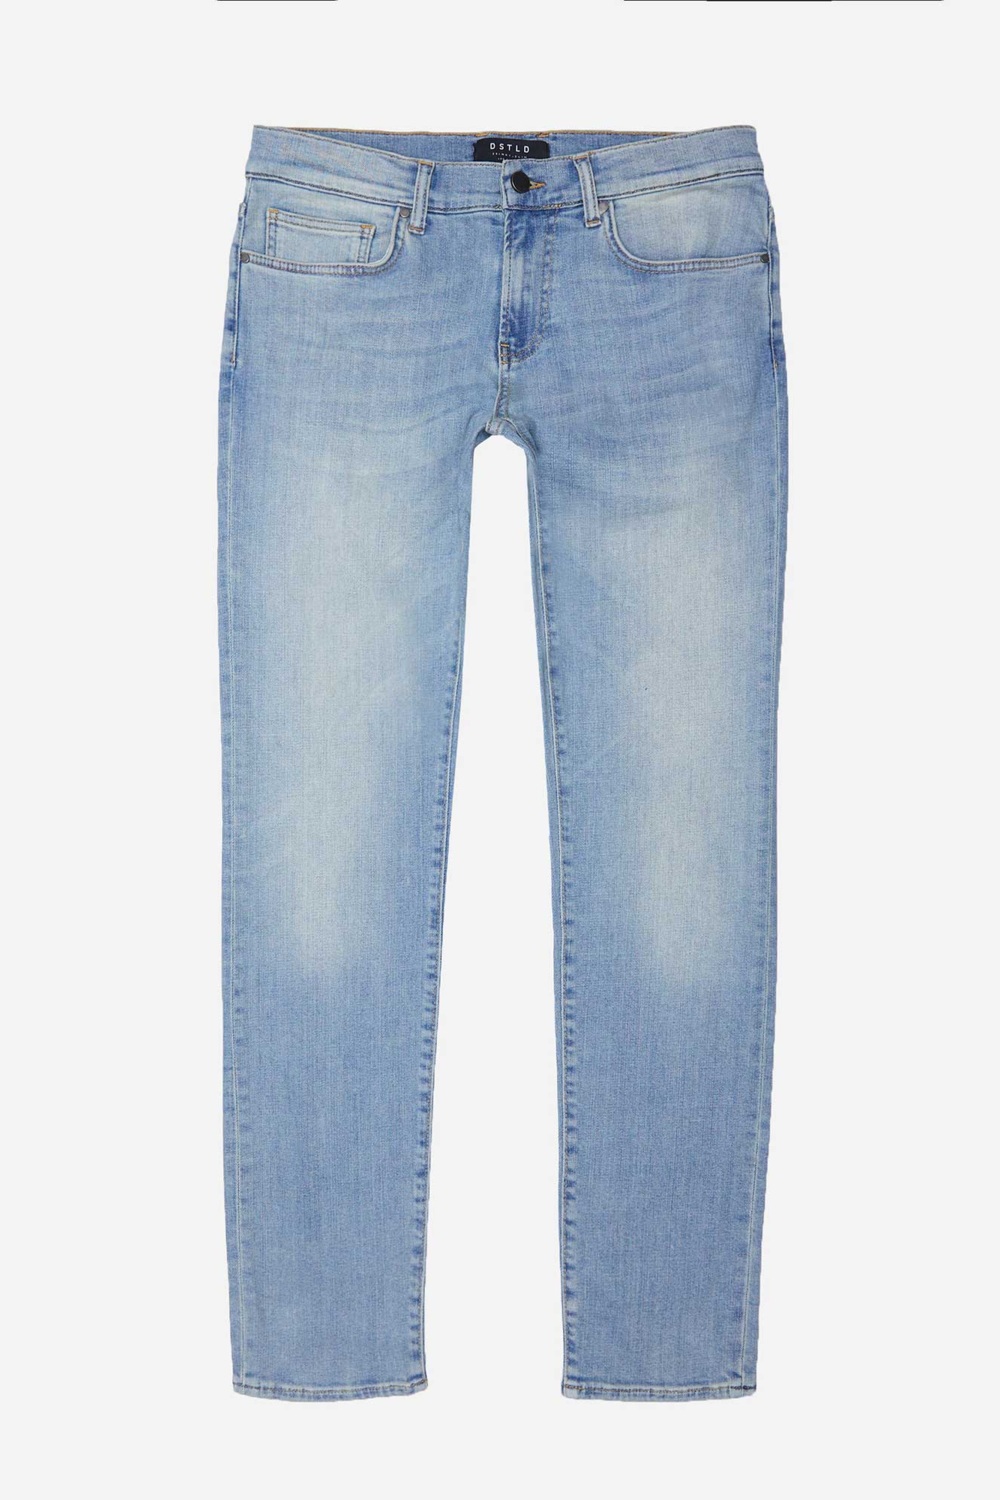 DSTLD mens-skinny-slim-jeans-in-light-wash.png